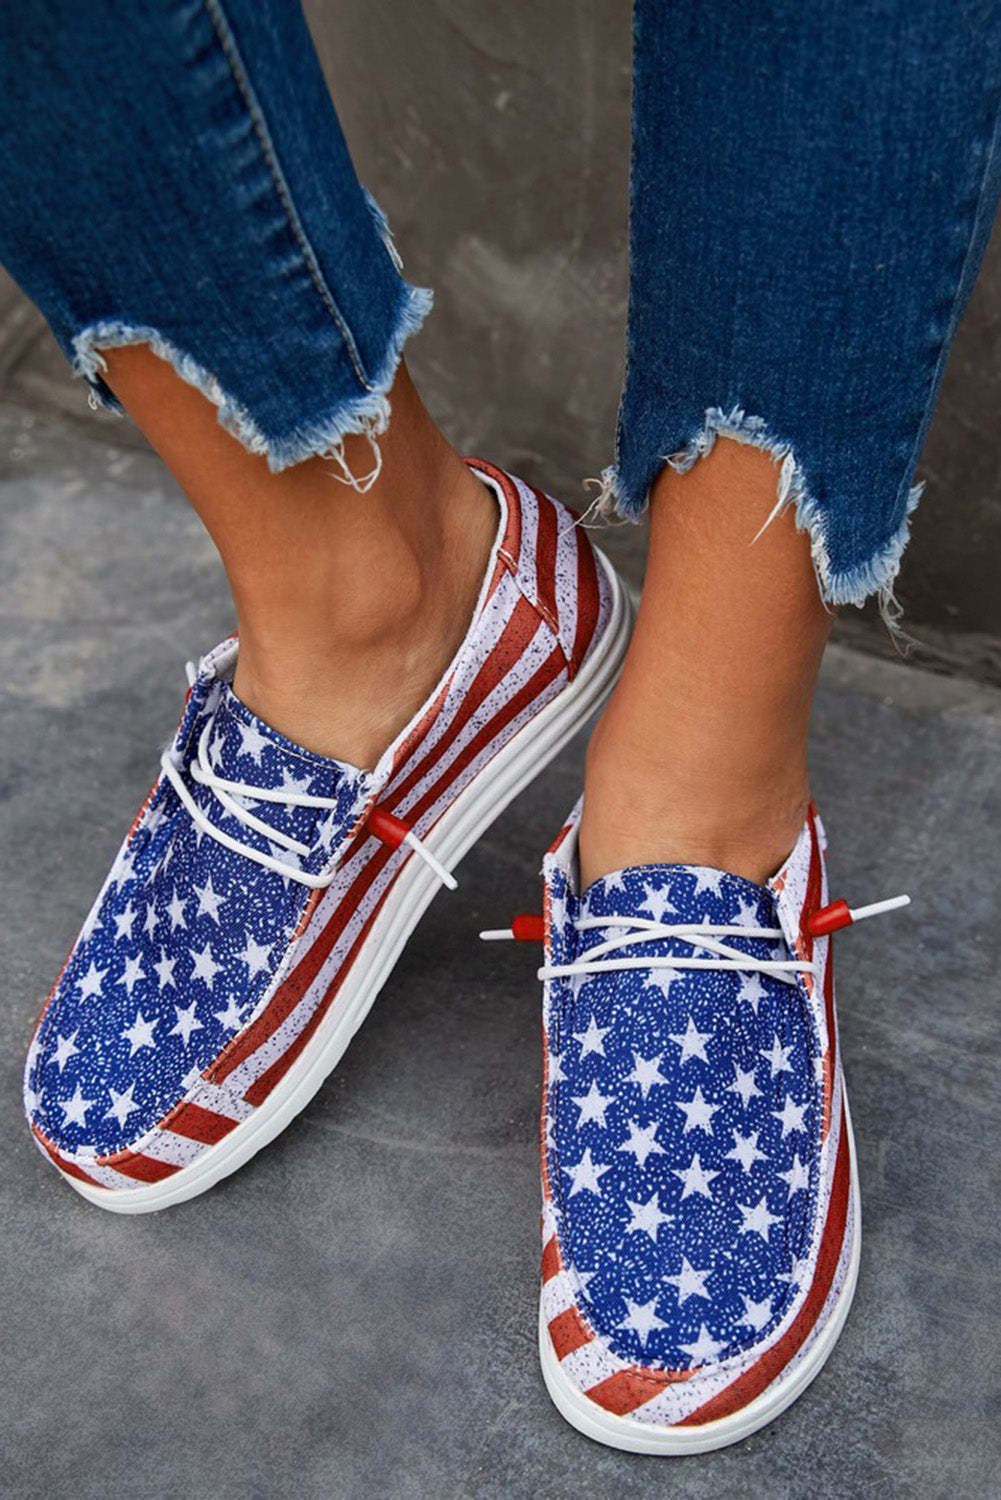 American Flag Print Slip On Flat Sneakers $ 35.99 - Evaless